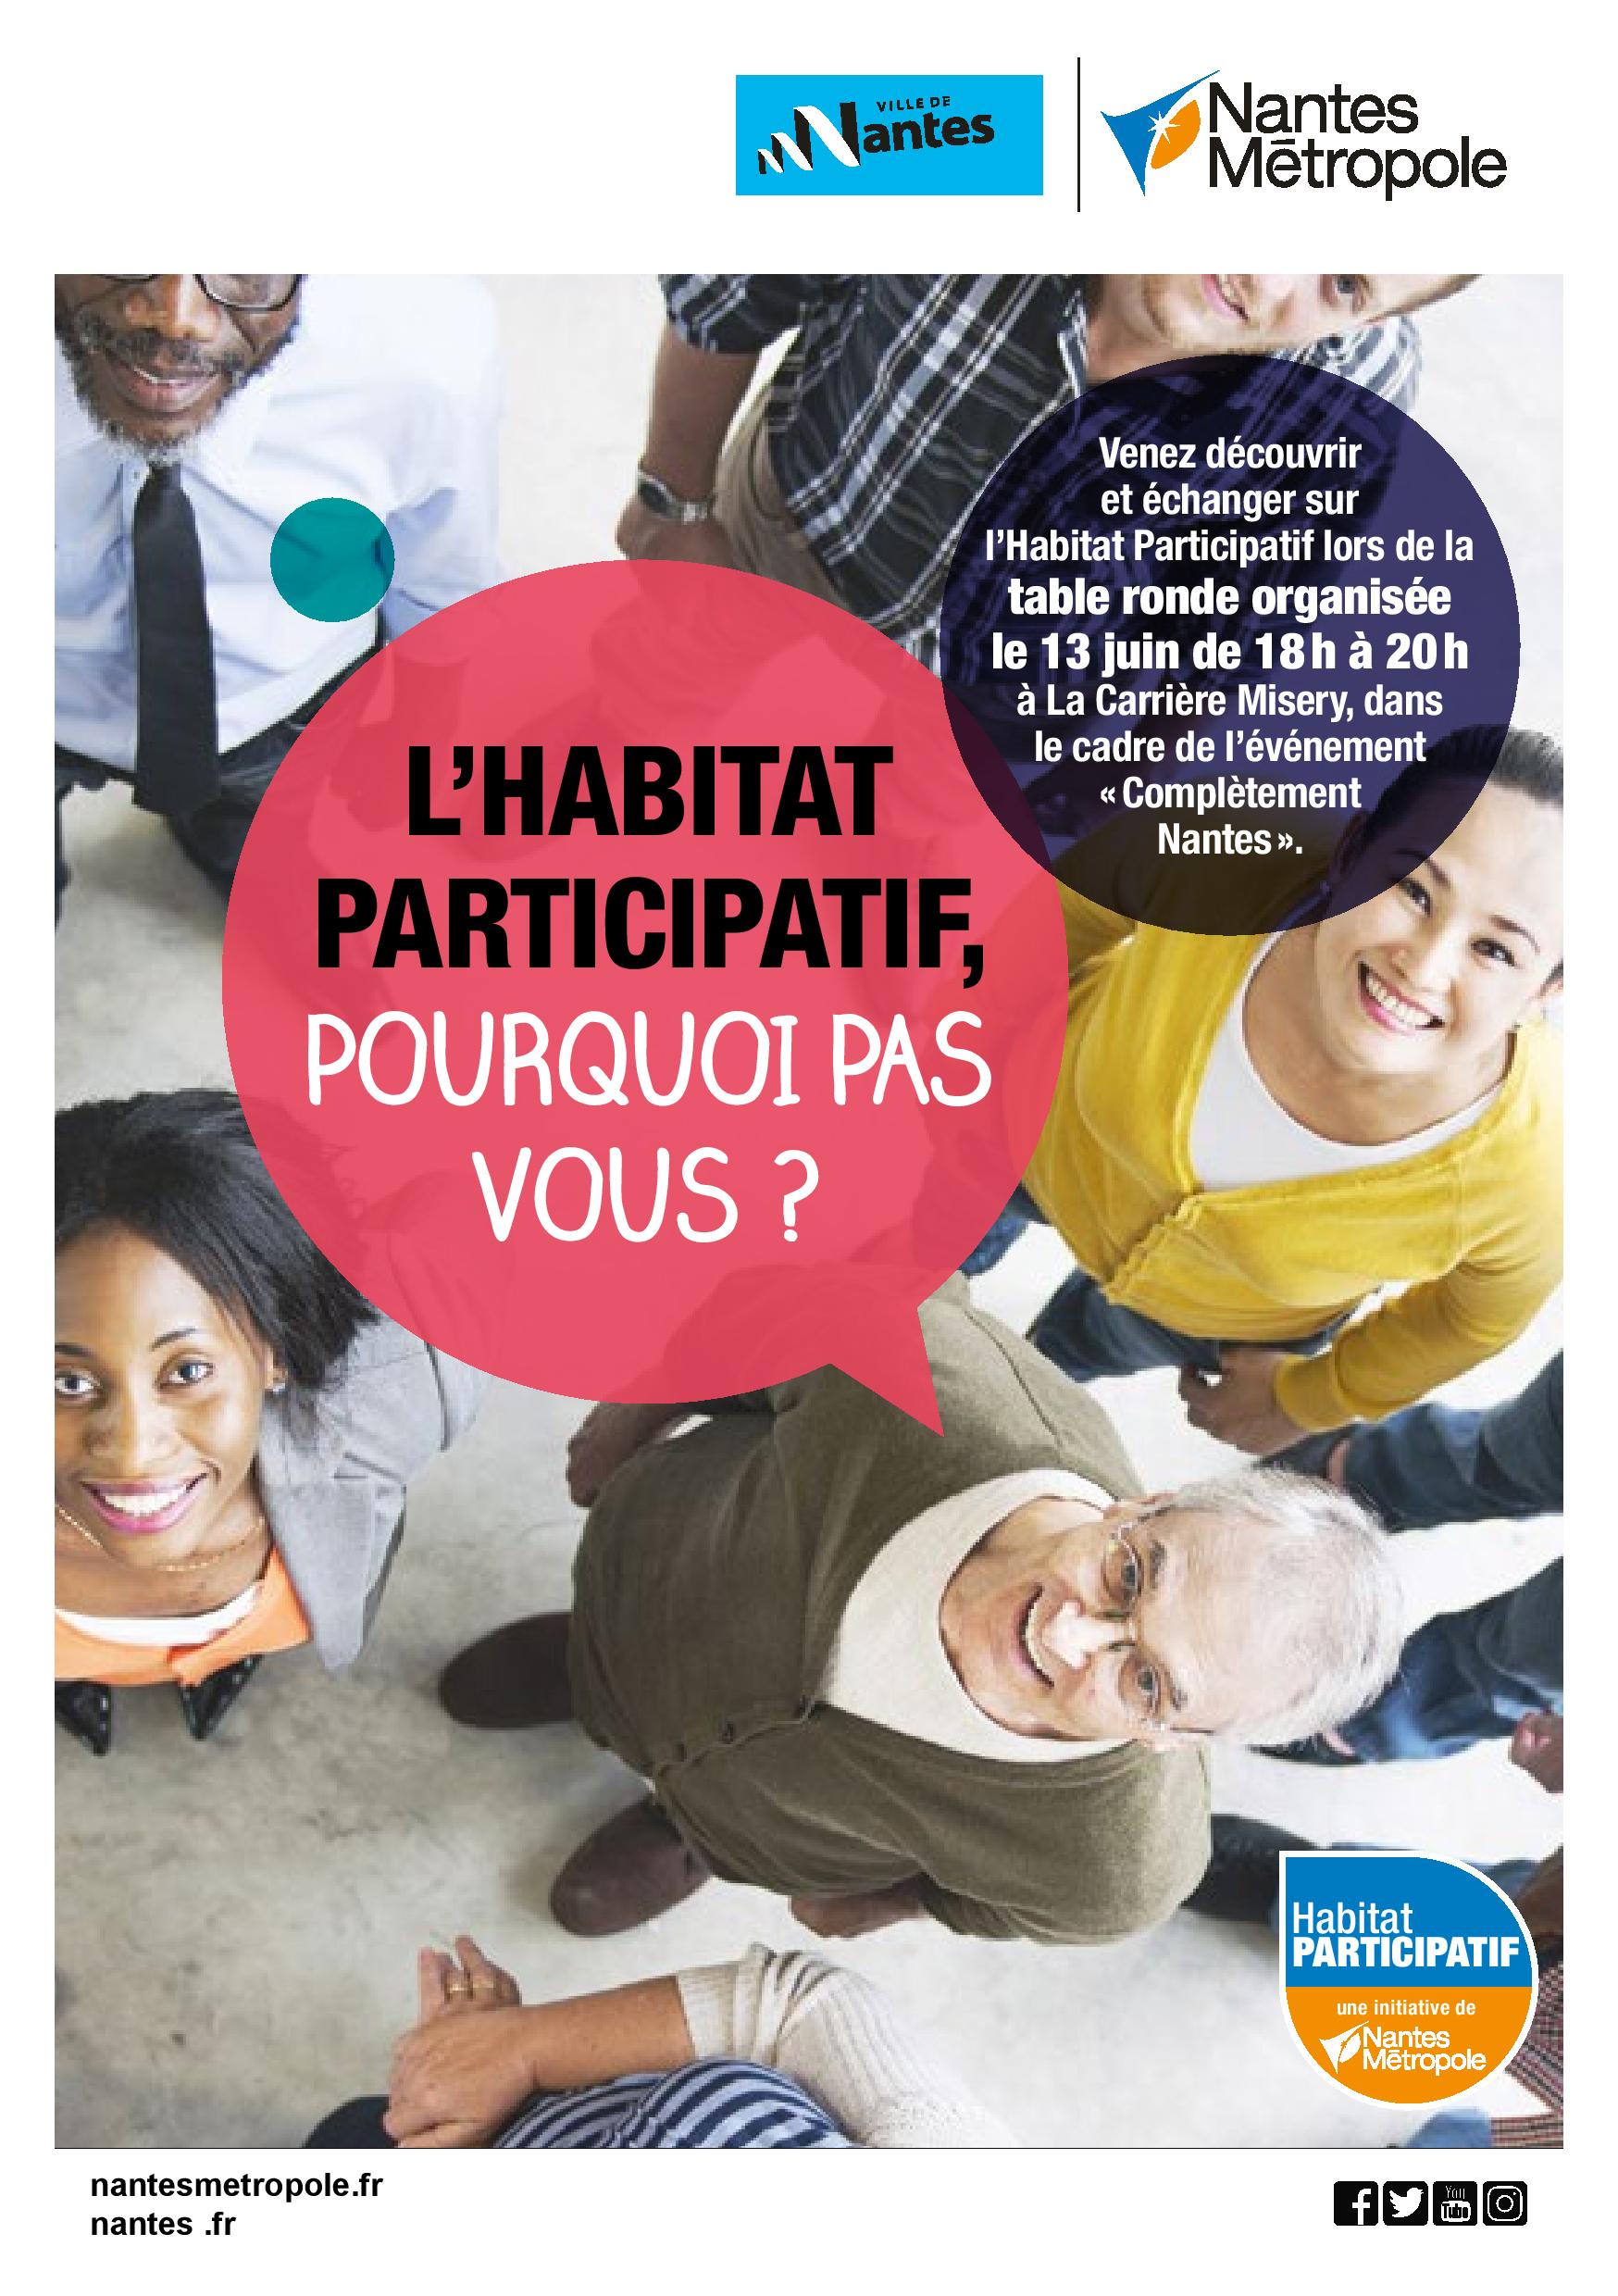 Nantes-Metropole-Habitat-participatif-1